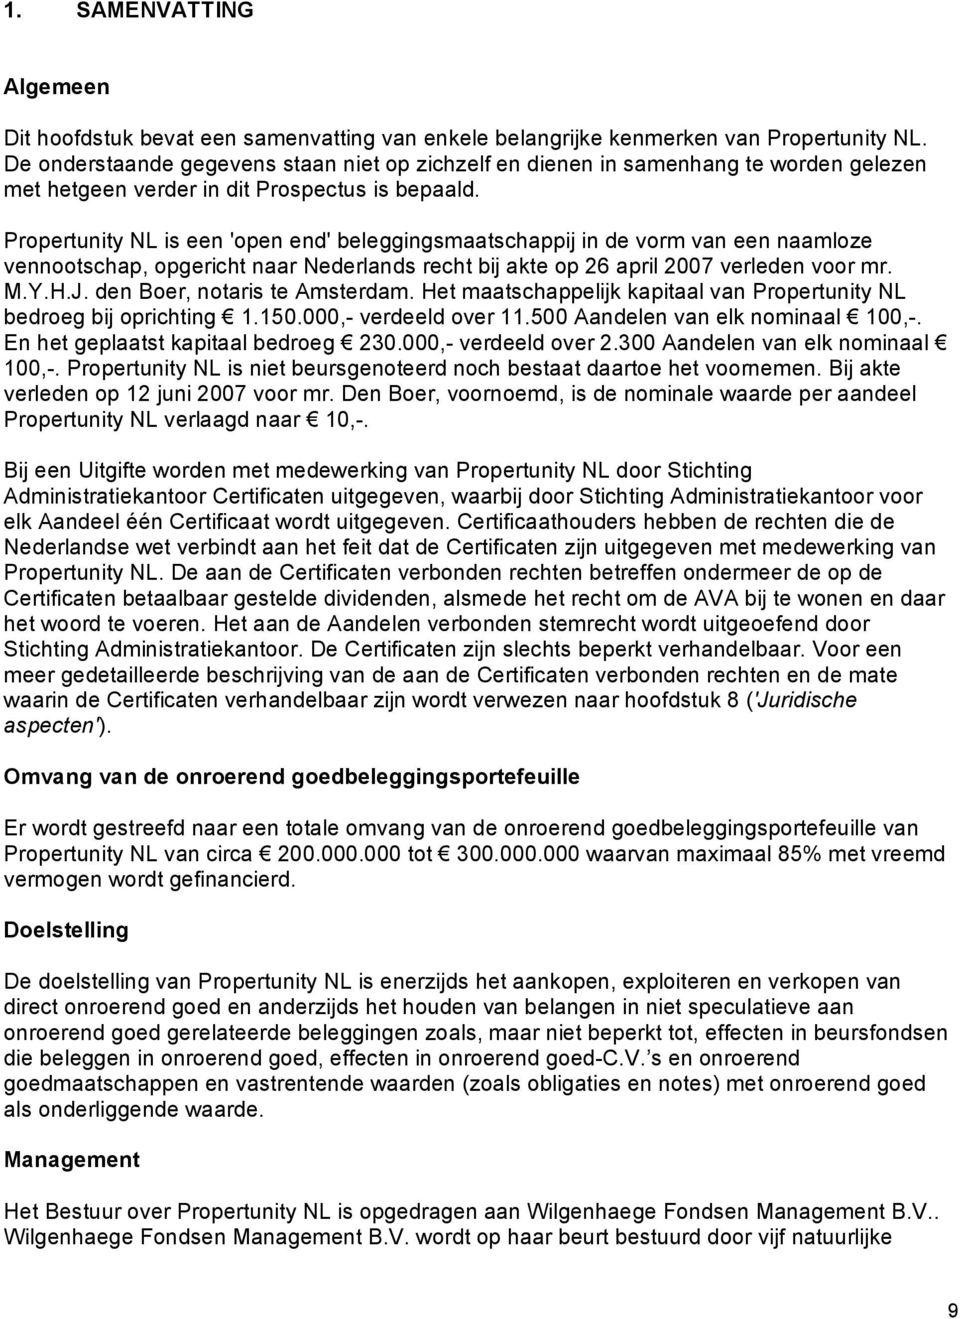 Propertunity NL is een 'open end' beleggingsmaatschappij in de vorm van een naamloze vennootschap, opgericht naar Nederlands recht bij akte op 26 april 2007 verleden voor mr. M.Y.H.J.